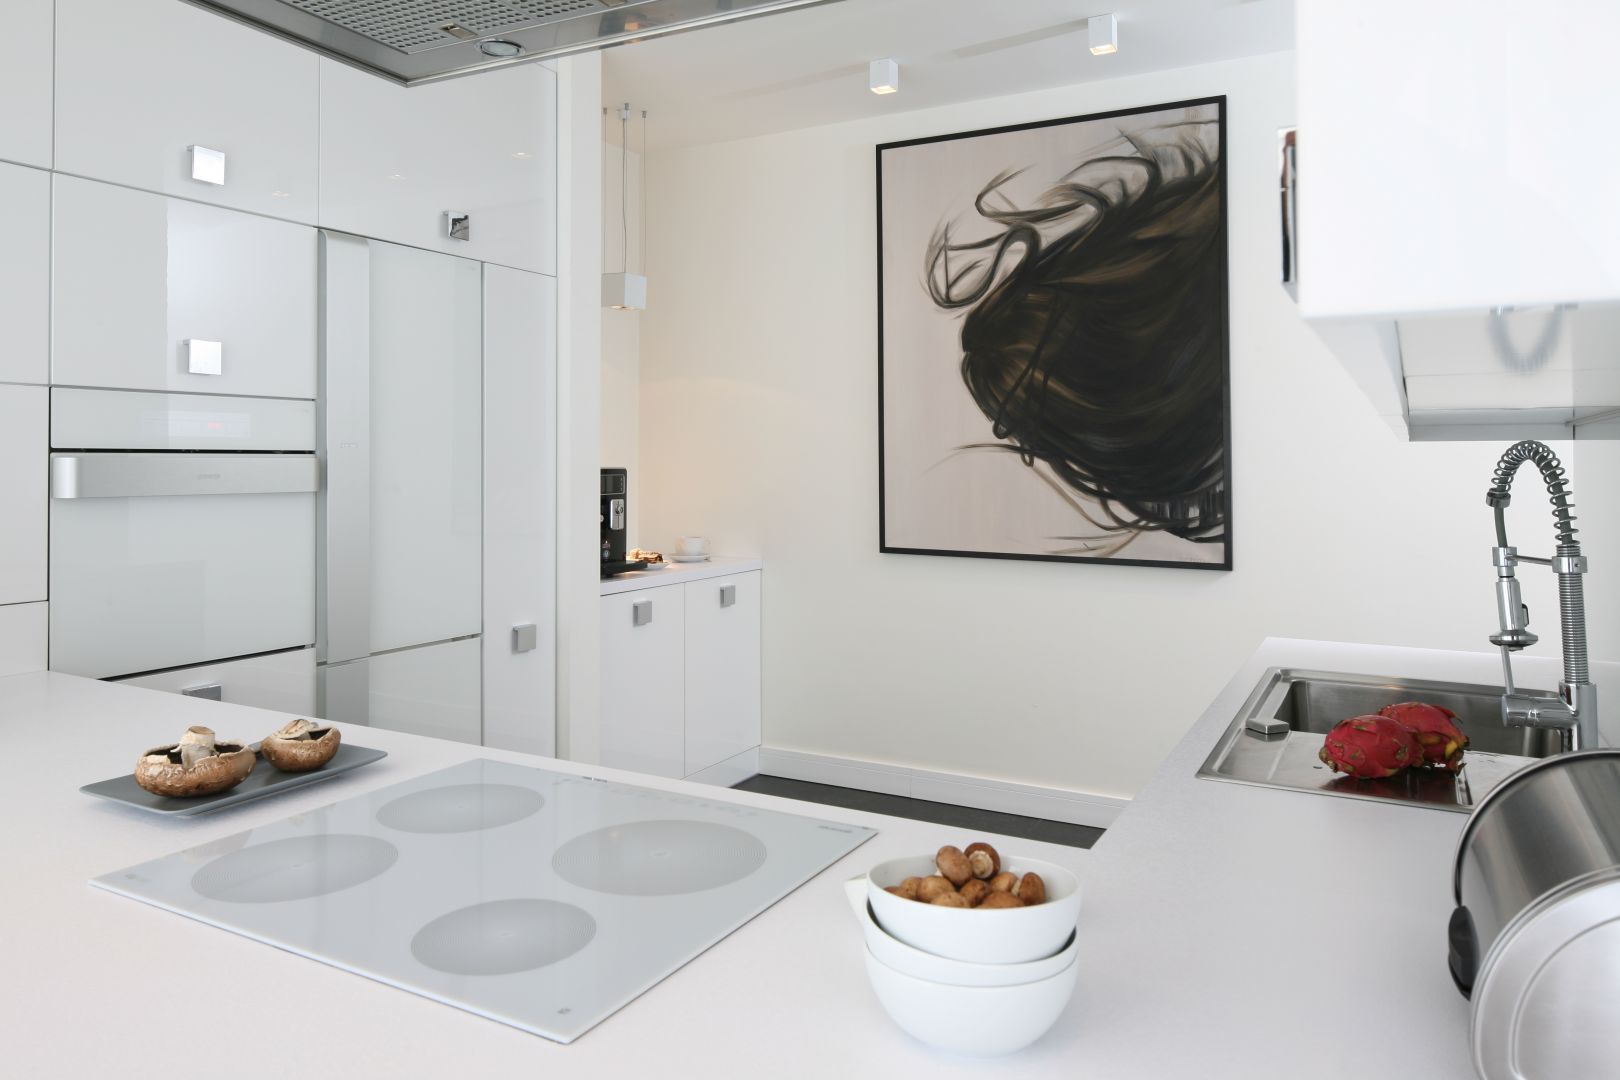 W przestronnej kuchni biel w wysokim połysku podkreśla salonowy charakter aranżacji przestrzeni. Projekt Dominik Respondek. Fot. Bartosz Jarosz.